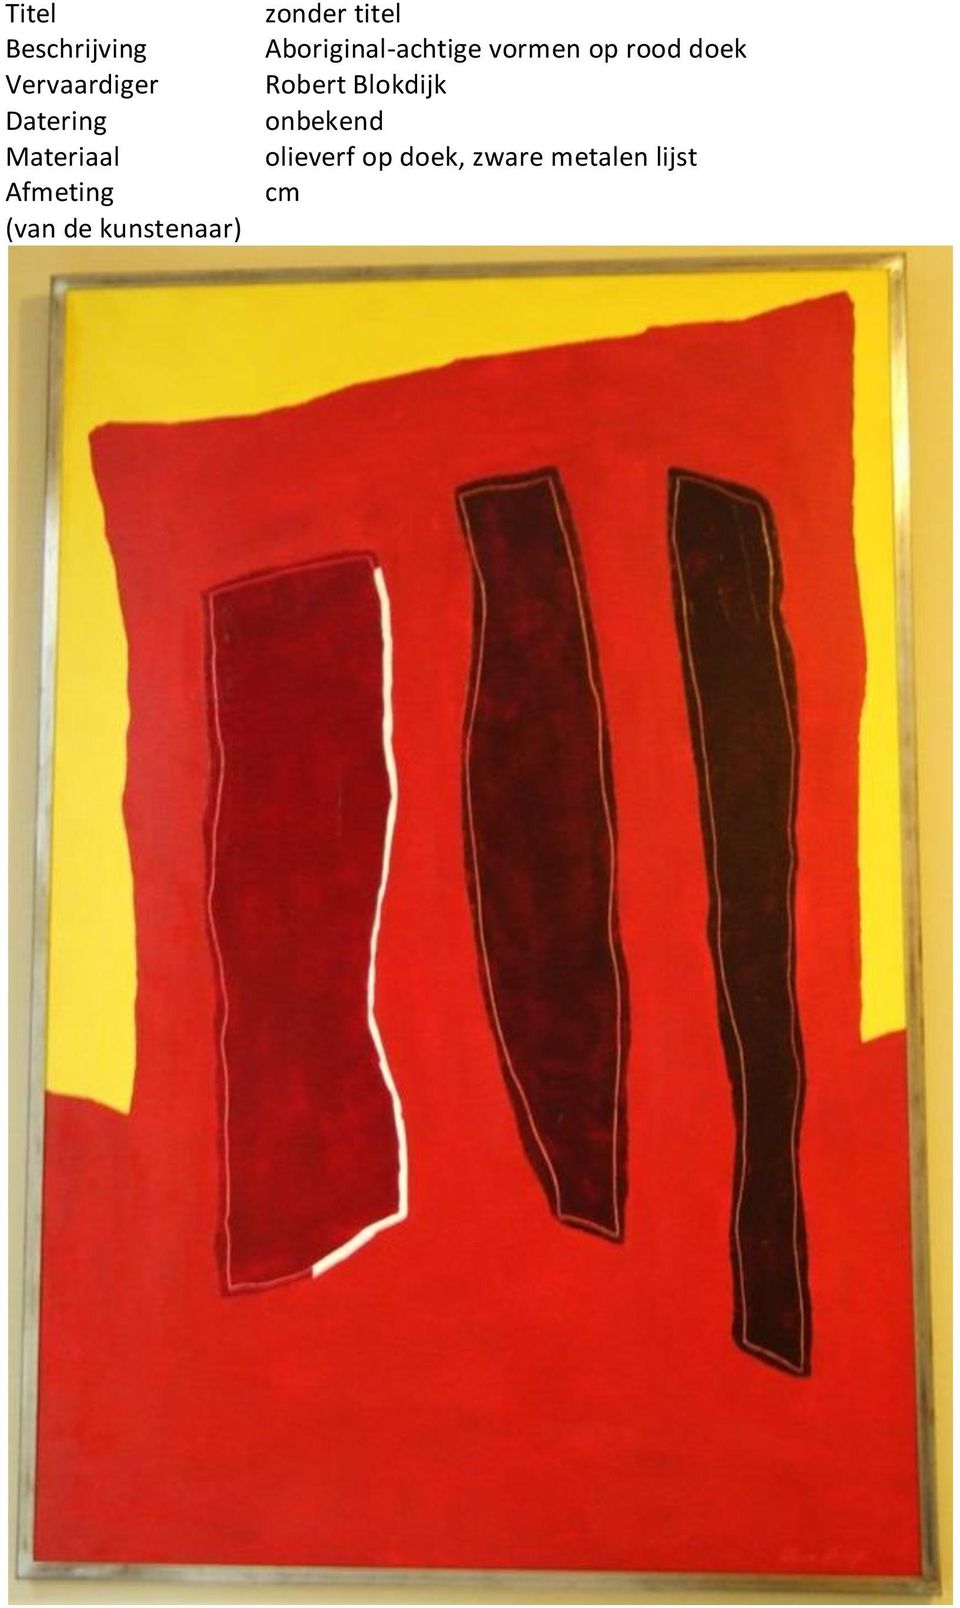 Aboriginal-achtige vormen op rood doek